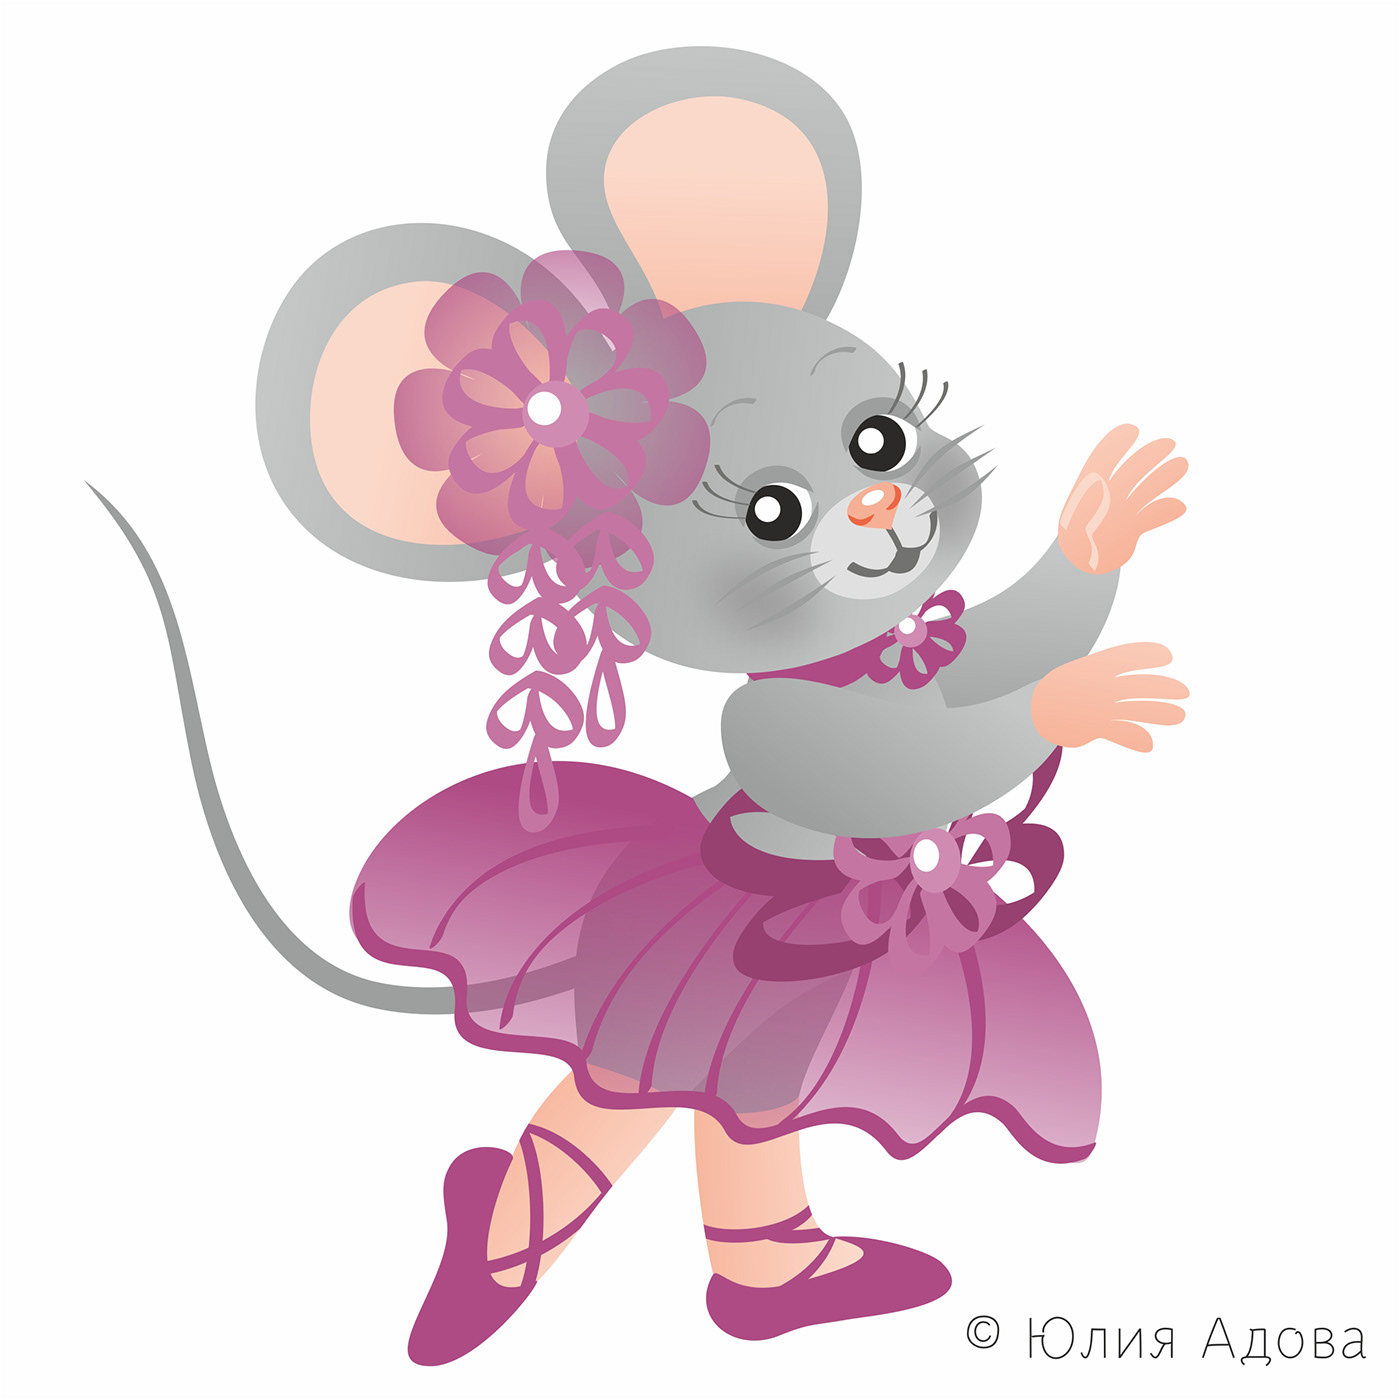 мышка мышки mouse Character персонаж mice балет ballet мультяшки мышата